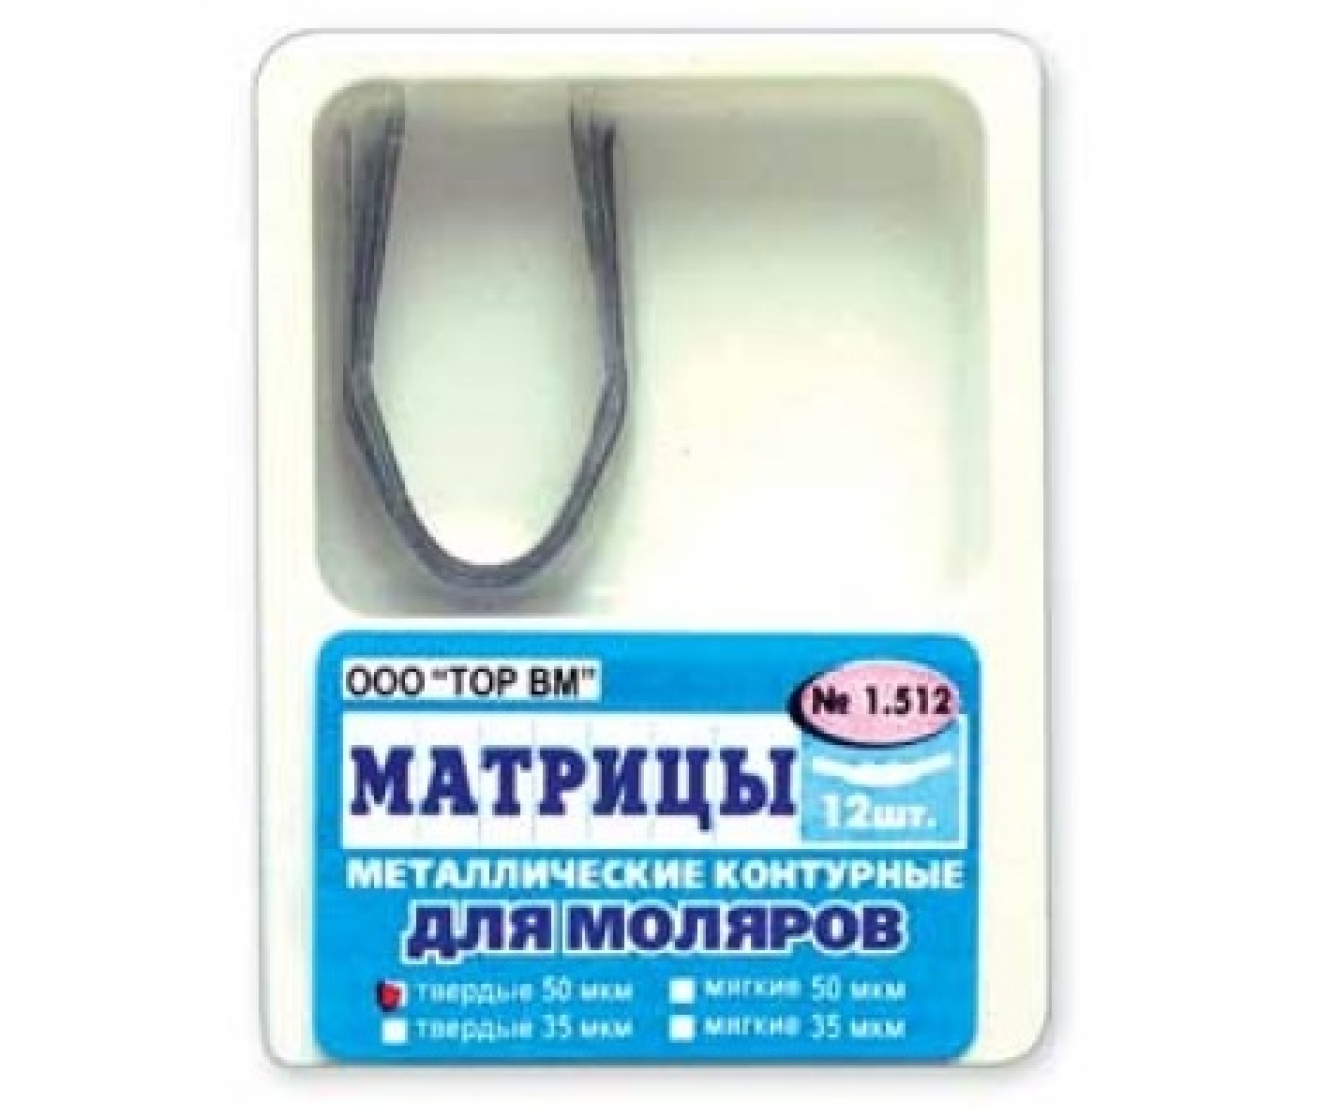 Матрицы металлические контурные, для моляров формы 2, 1.512, ТОР ВМ (Россия)